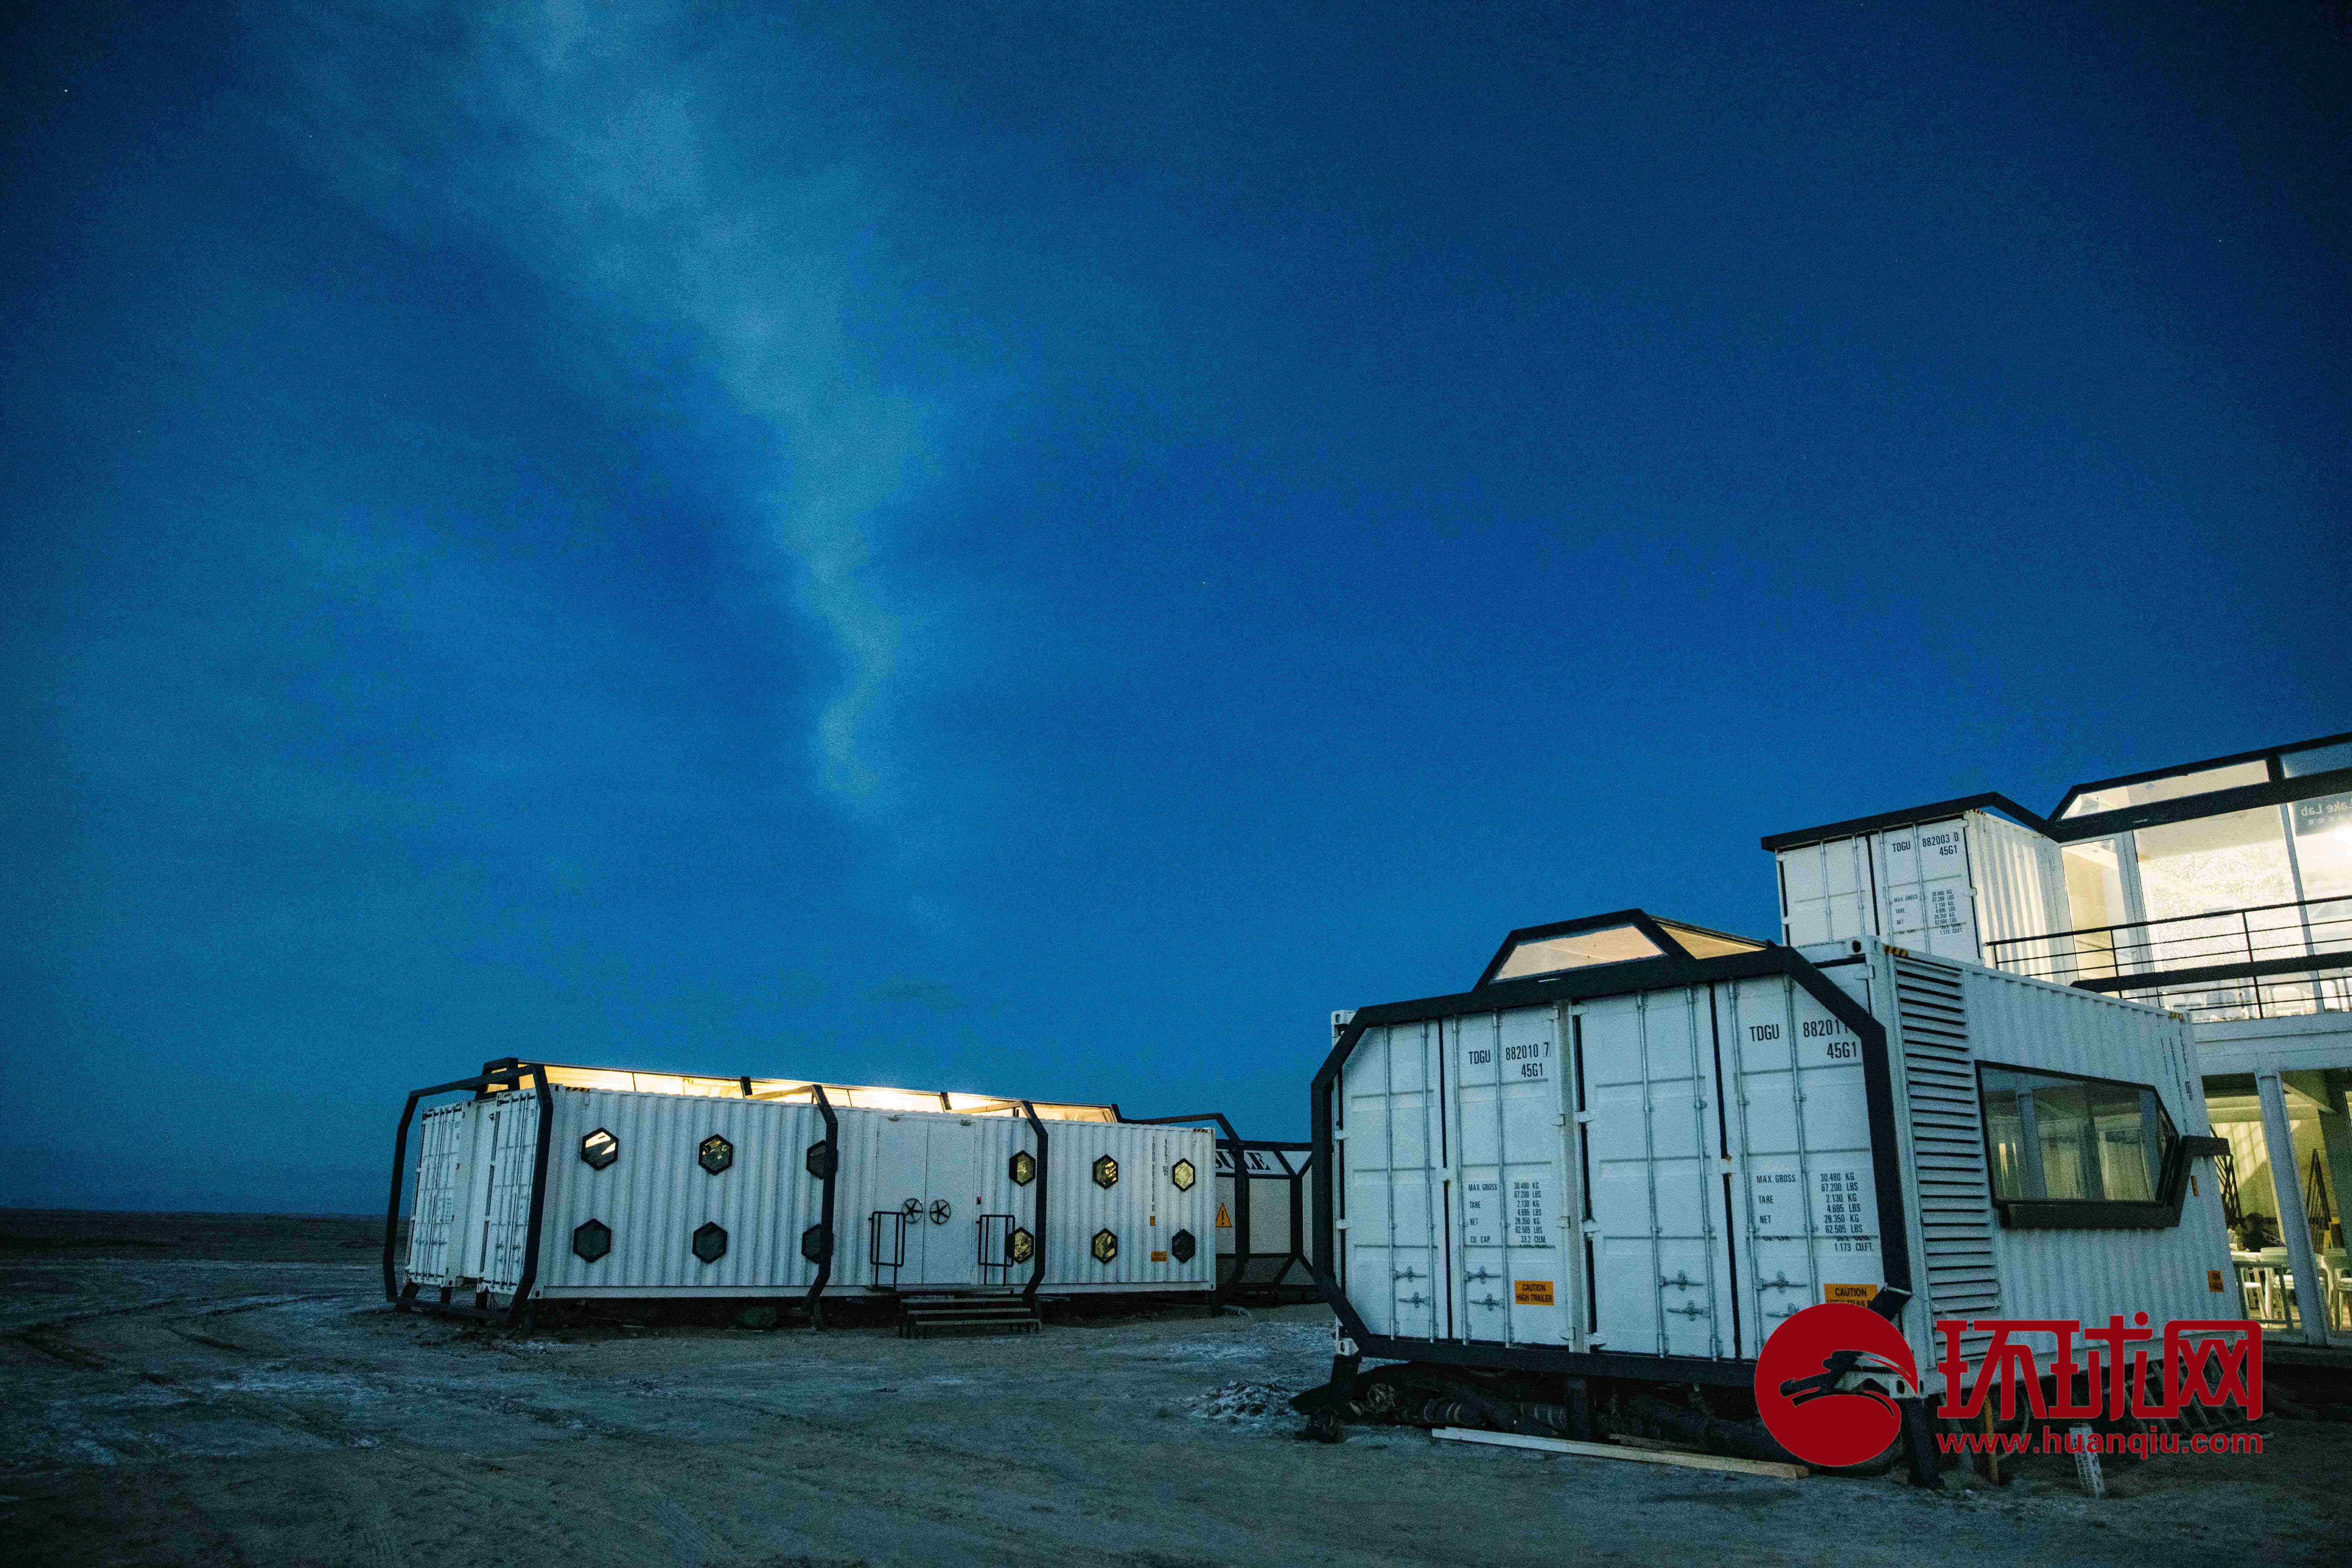 冷湖火星营地是中国首个火星模拟基地,位于青海省海西州茫崖市冷湖